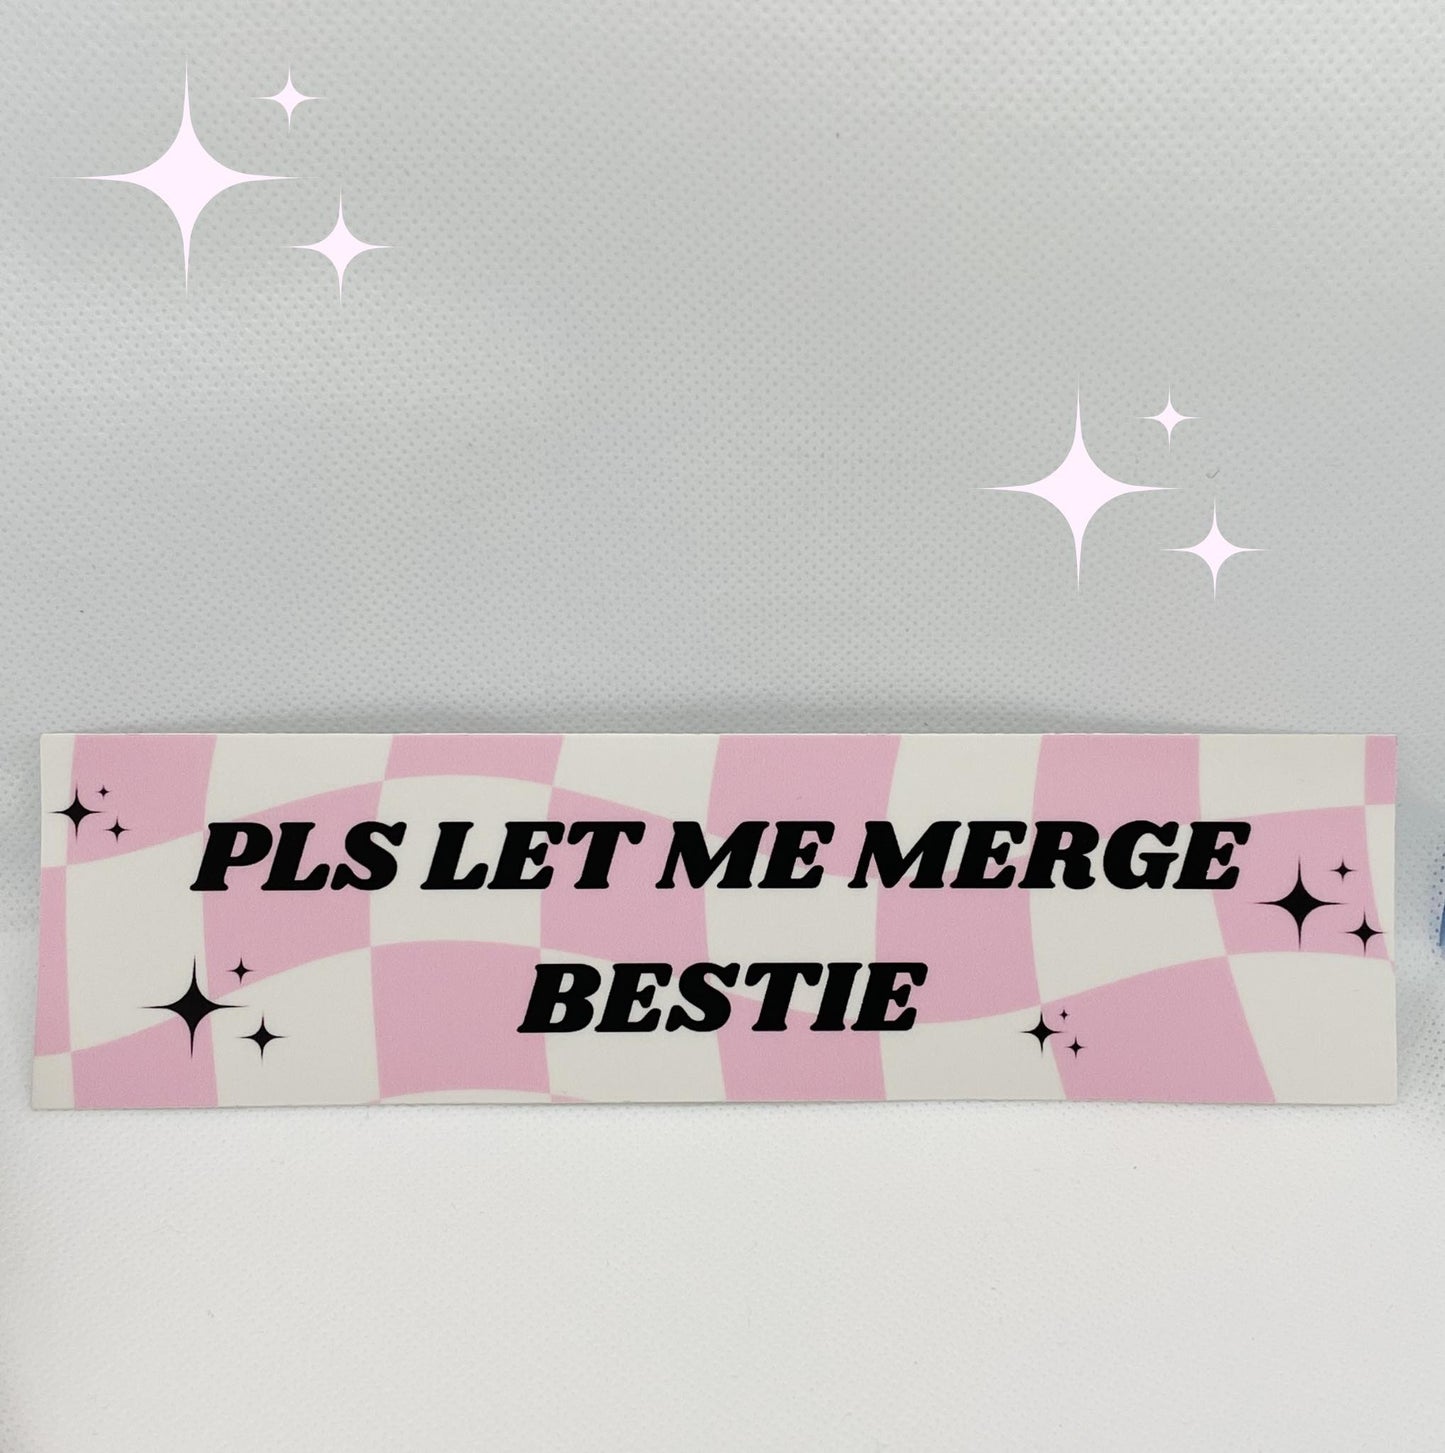 PLS LET ME MERGE BESTIE bumper sticker